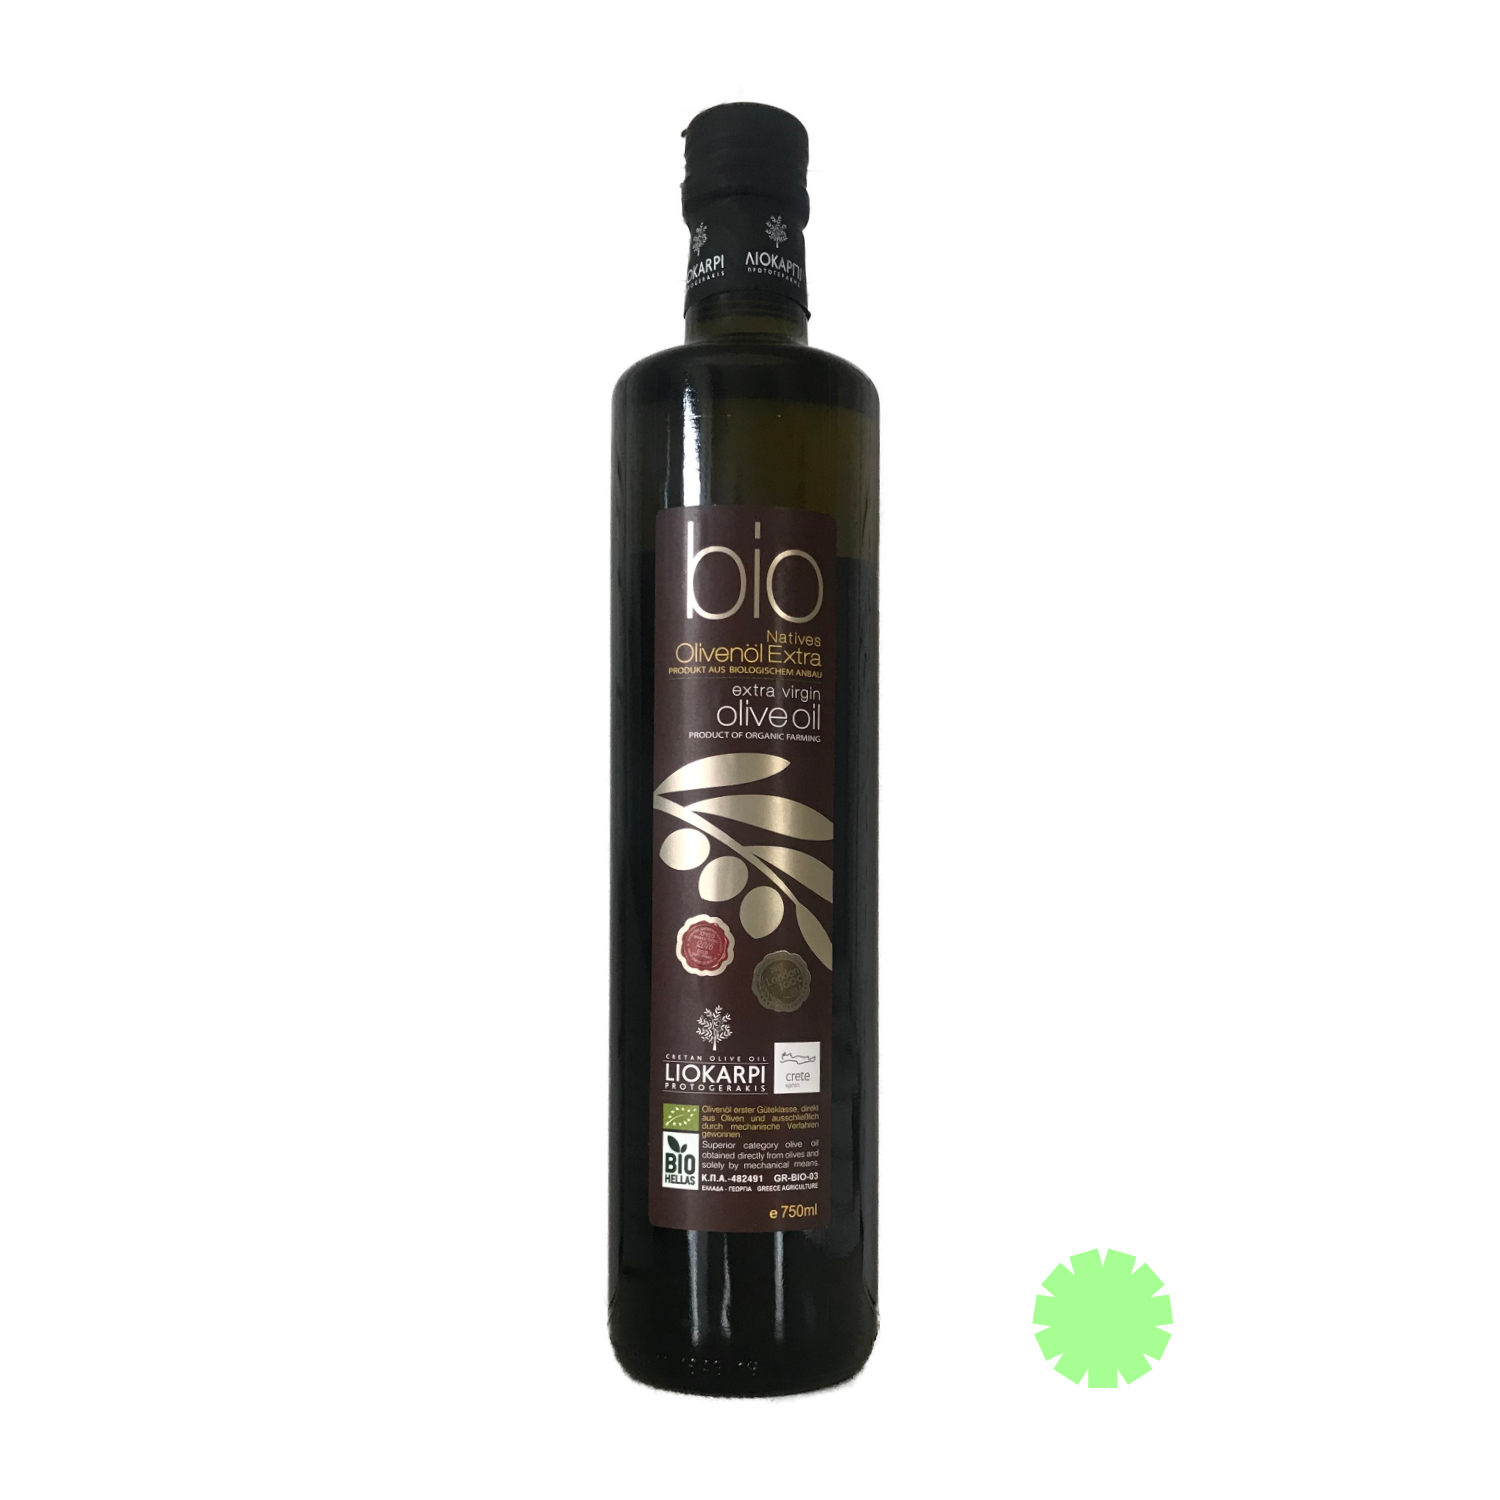 Liokarpi・ Kretisches Olivenöl・750 ml